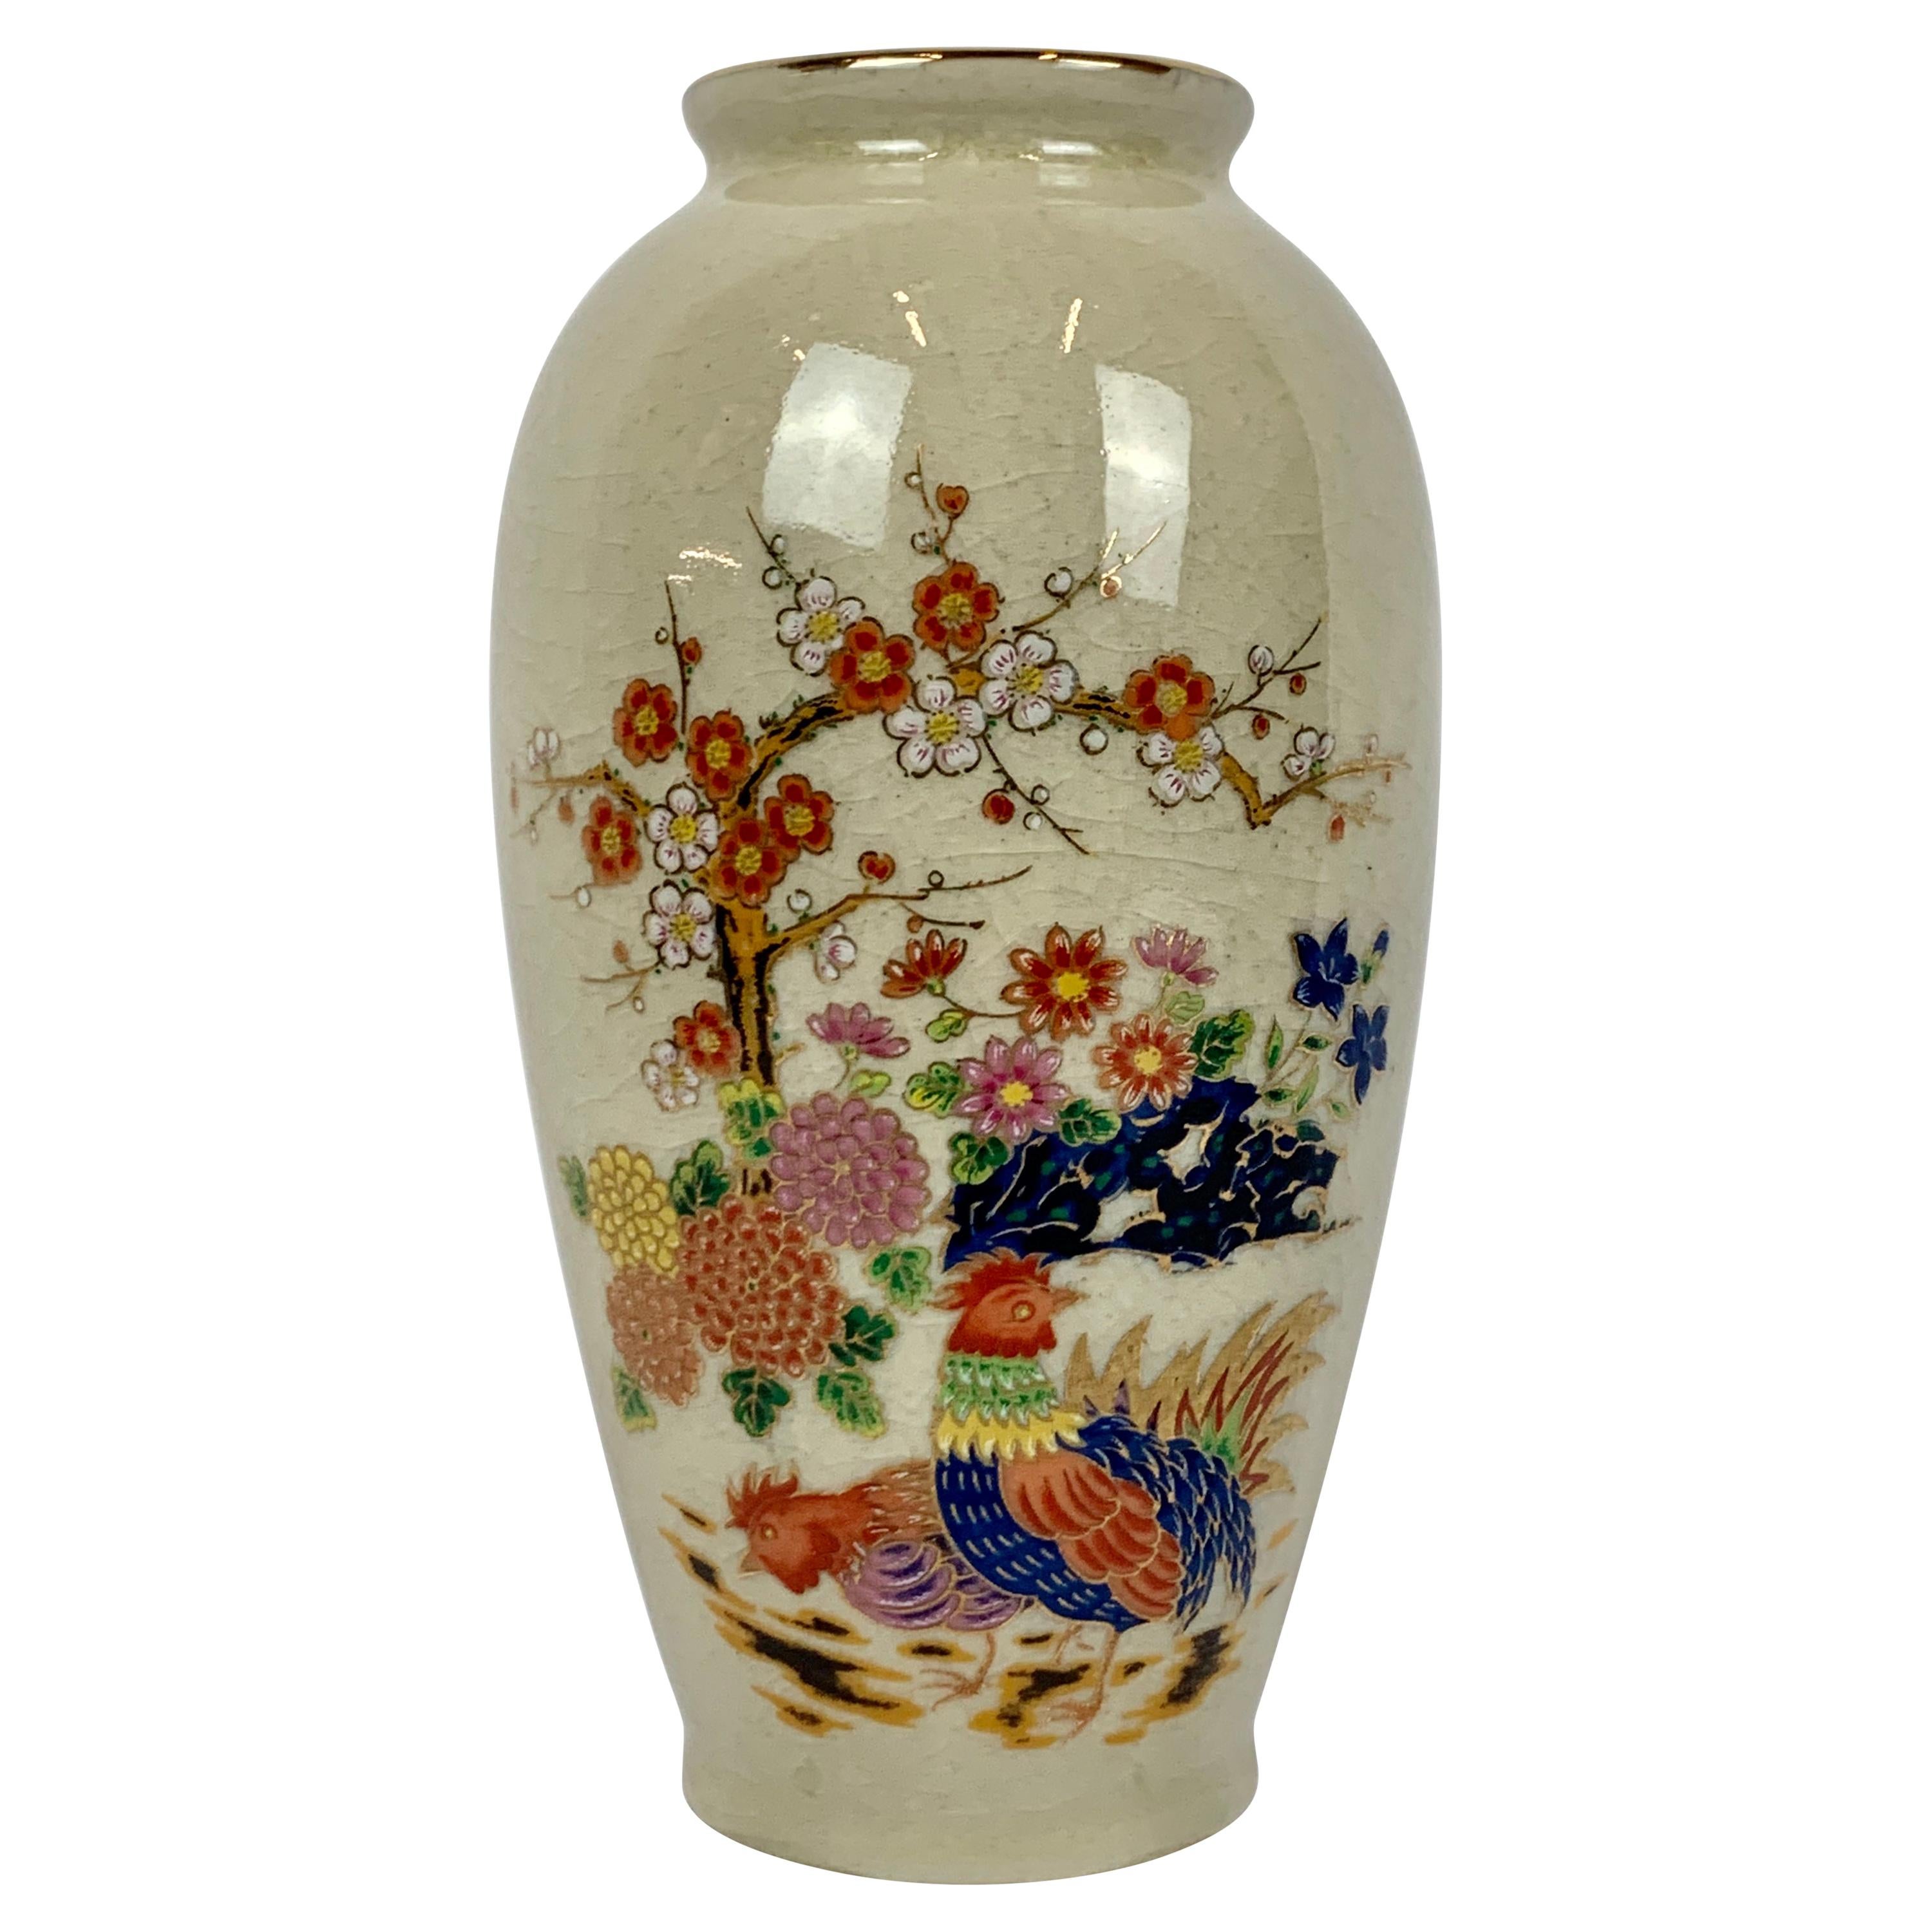  Japanische Porzellanvase mit zarter, handbemalter Blumensprüherei